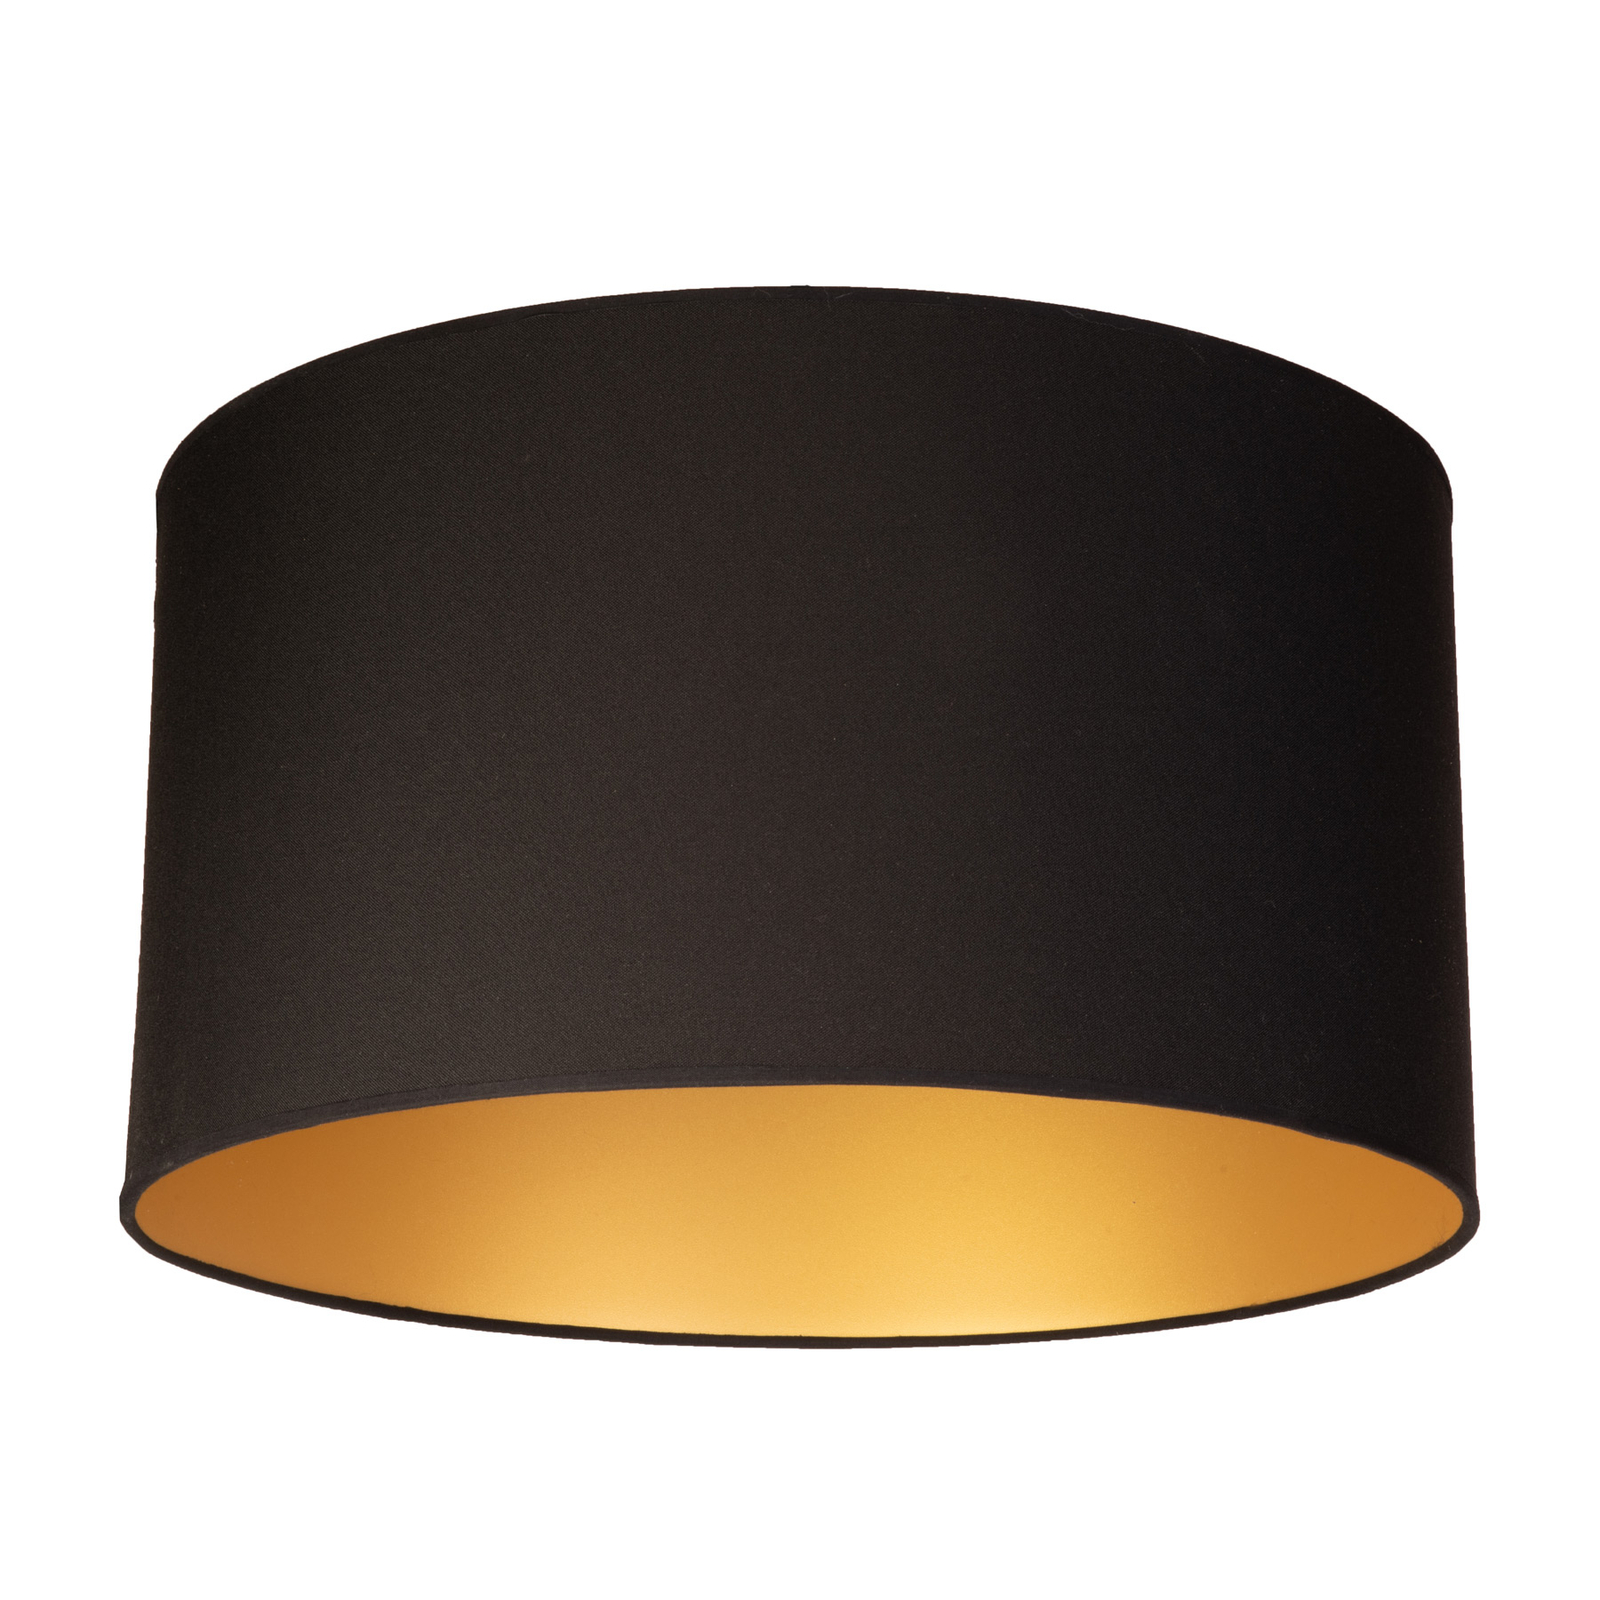 Lampa sufitowa Roller Ø60cm, czarna/złota